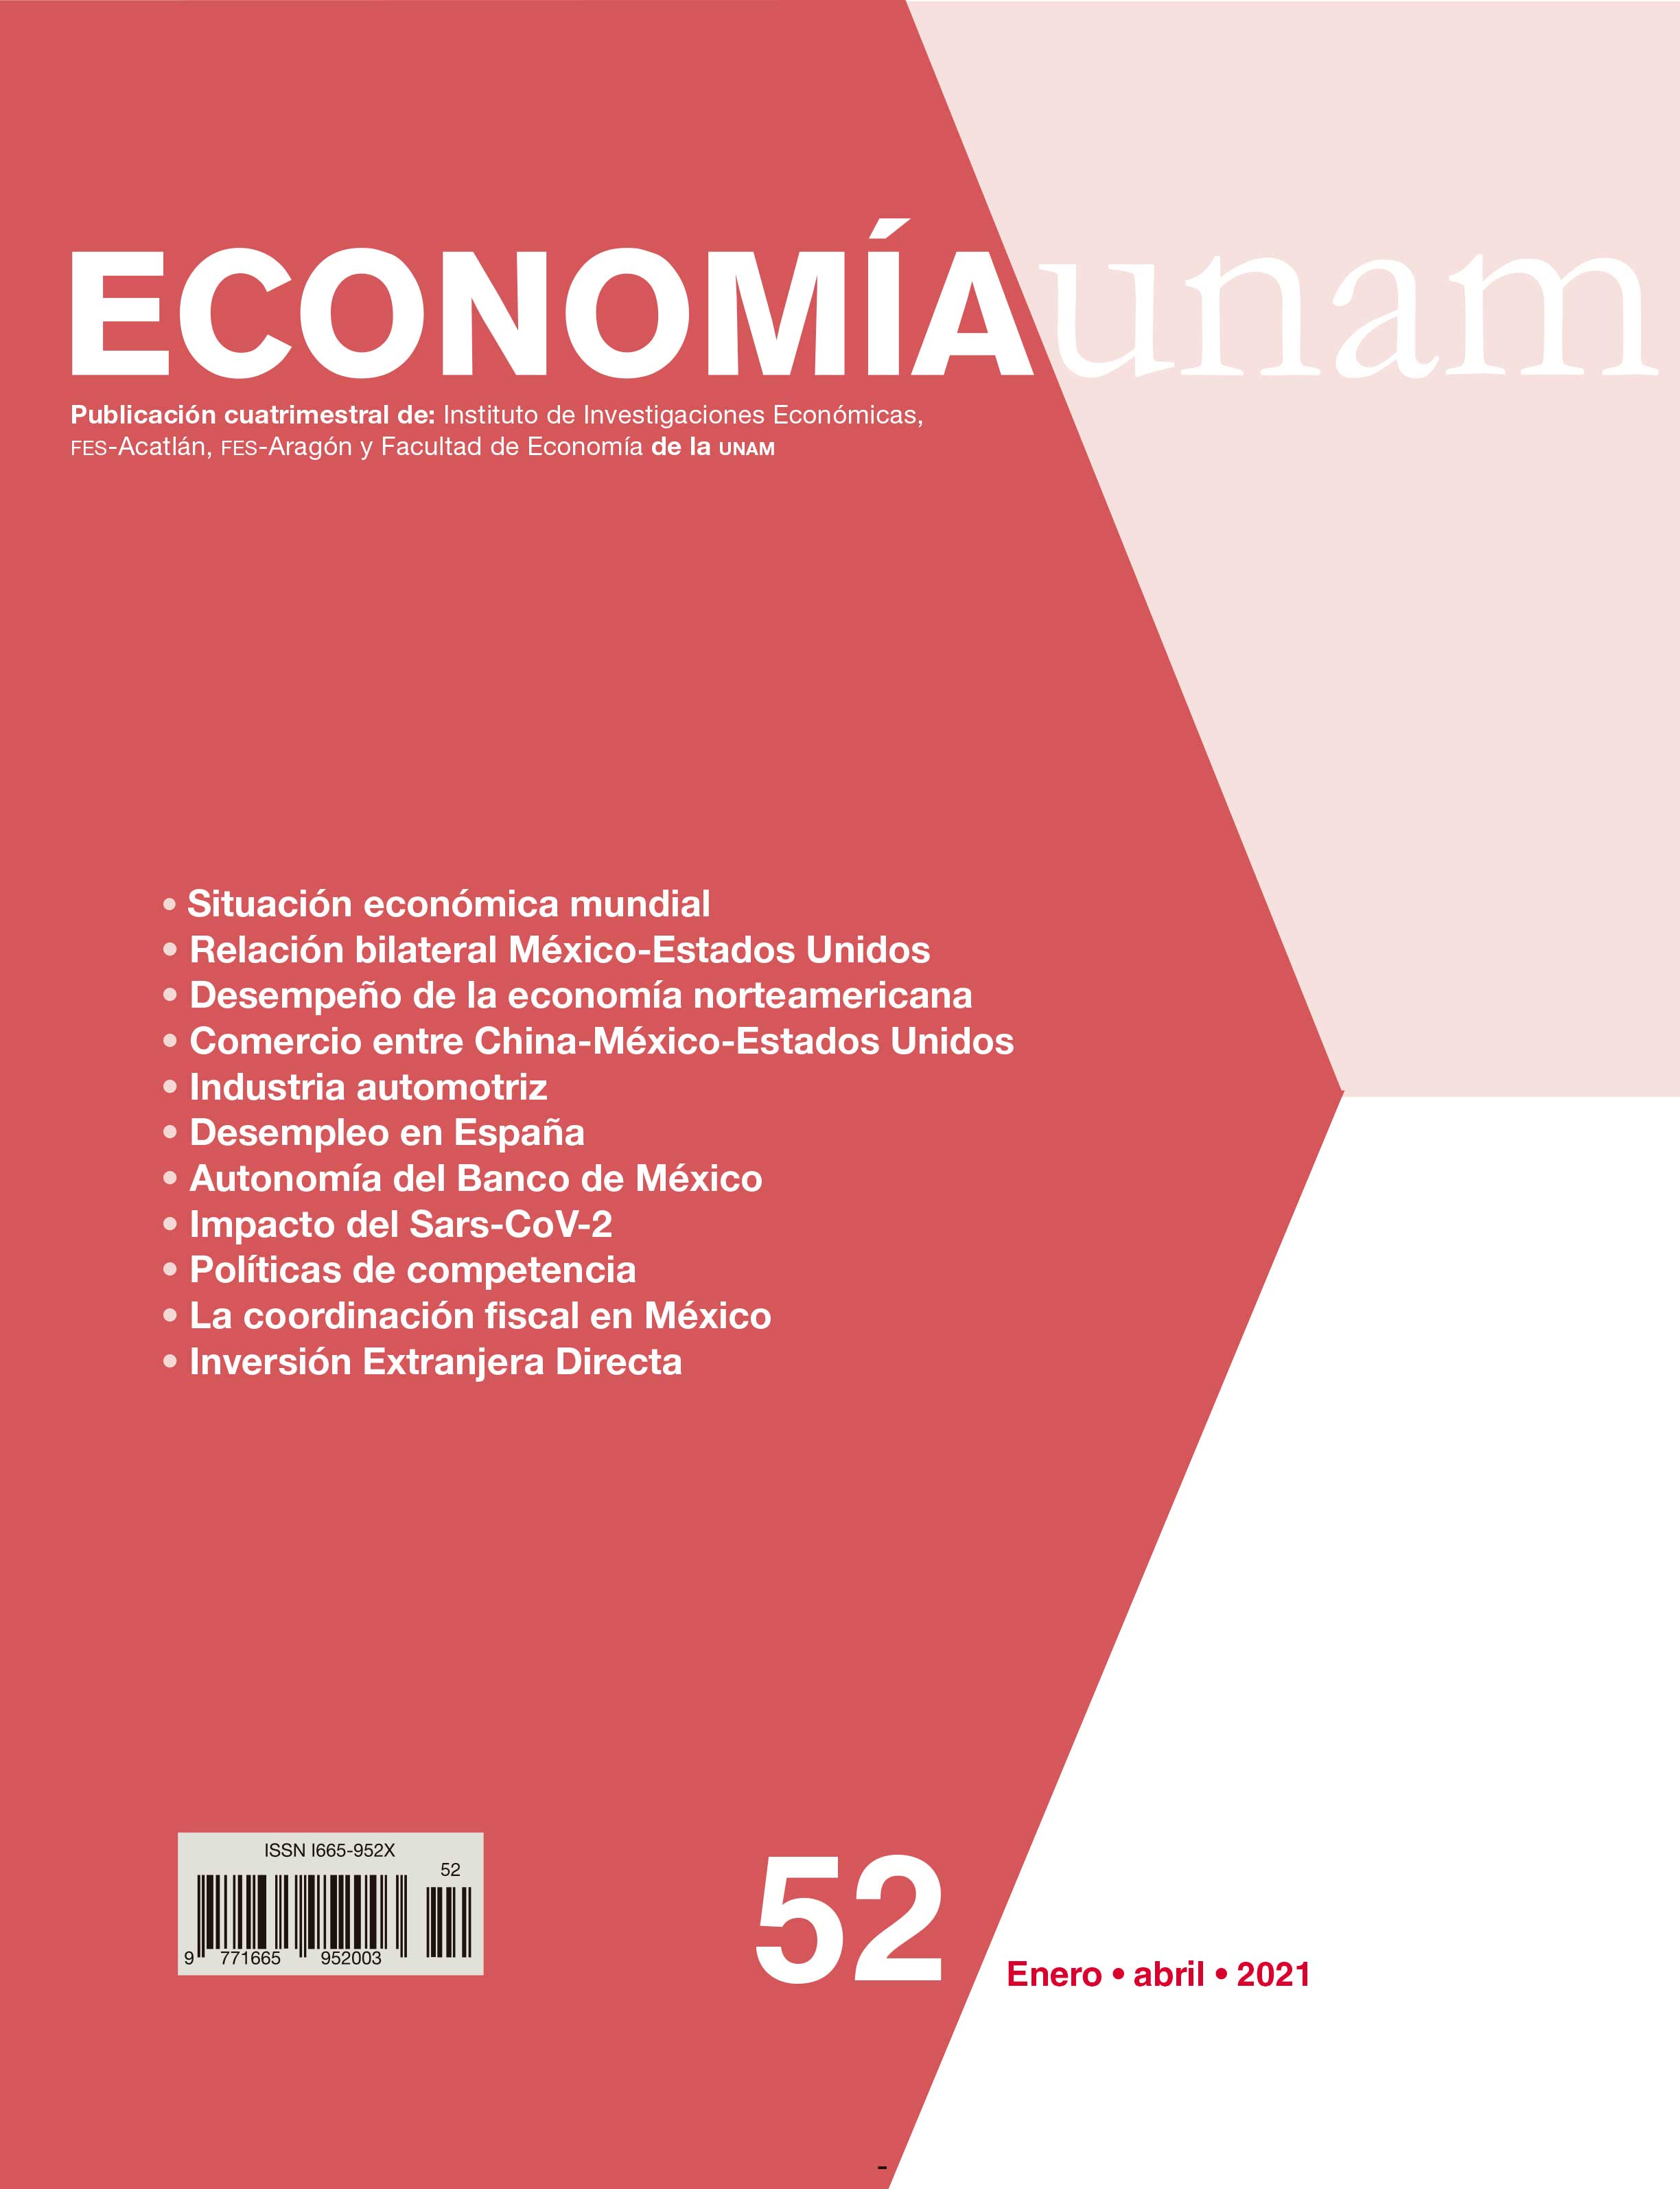 La COVID-19 y el desempeño de la economía norteamericana durante 2021 [824]